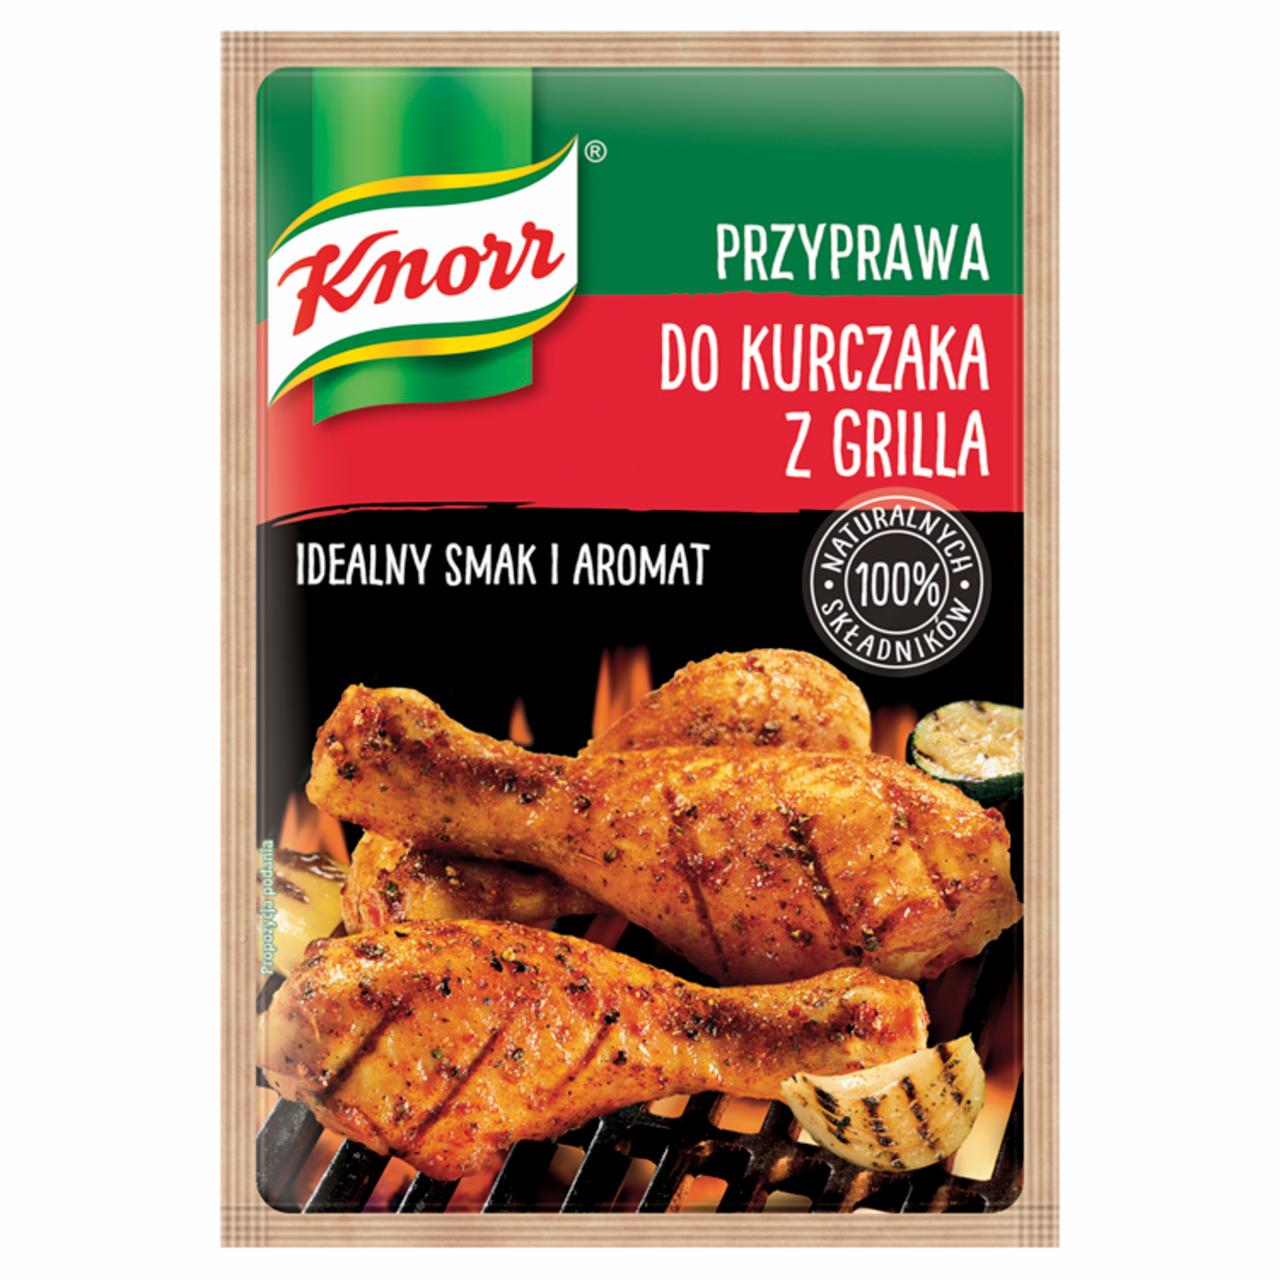 Zdjęcia - Knorr Przyprawa do kurczaka z grilla 23 g